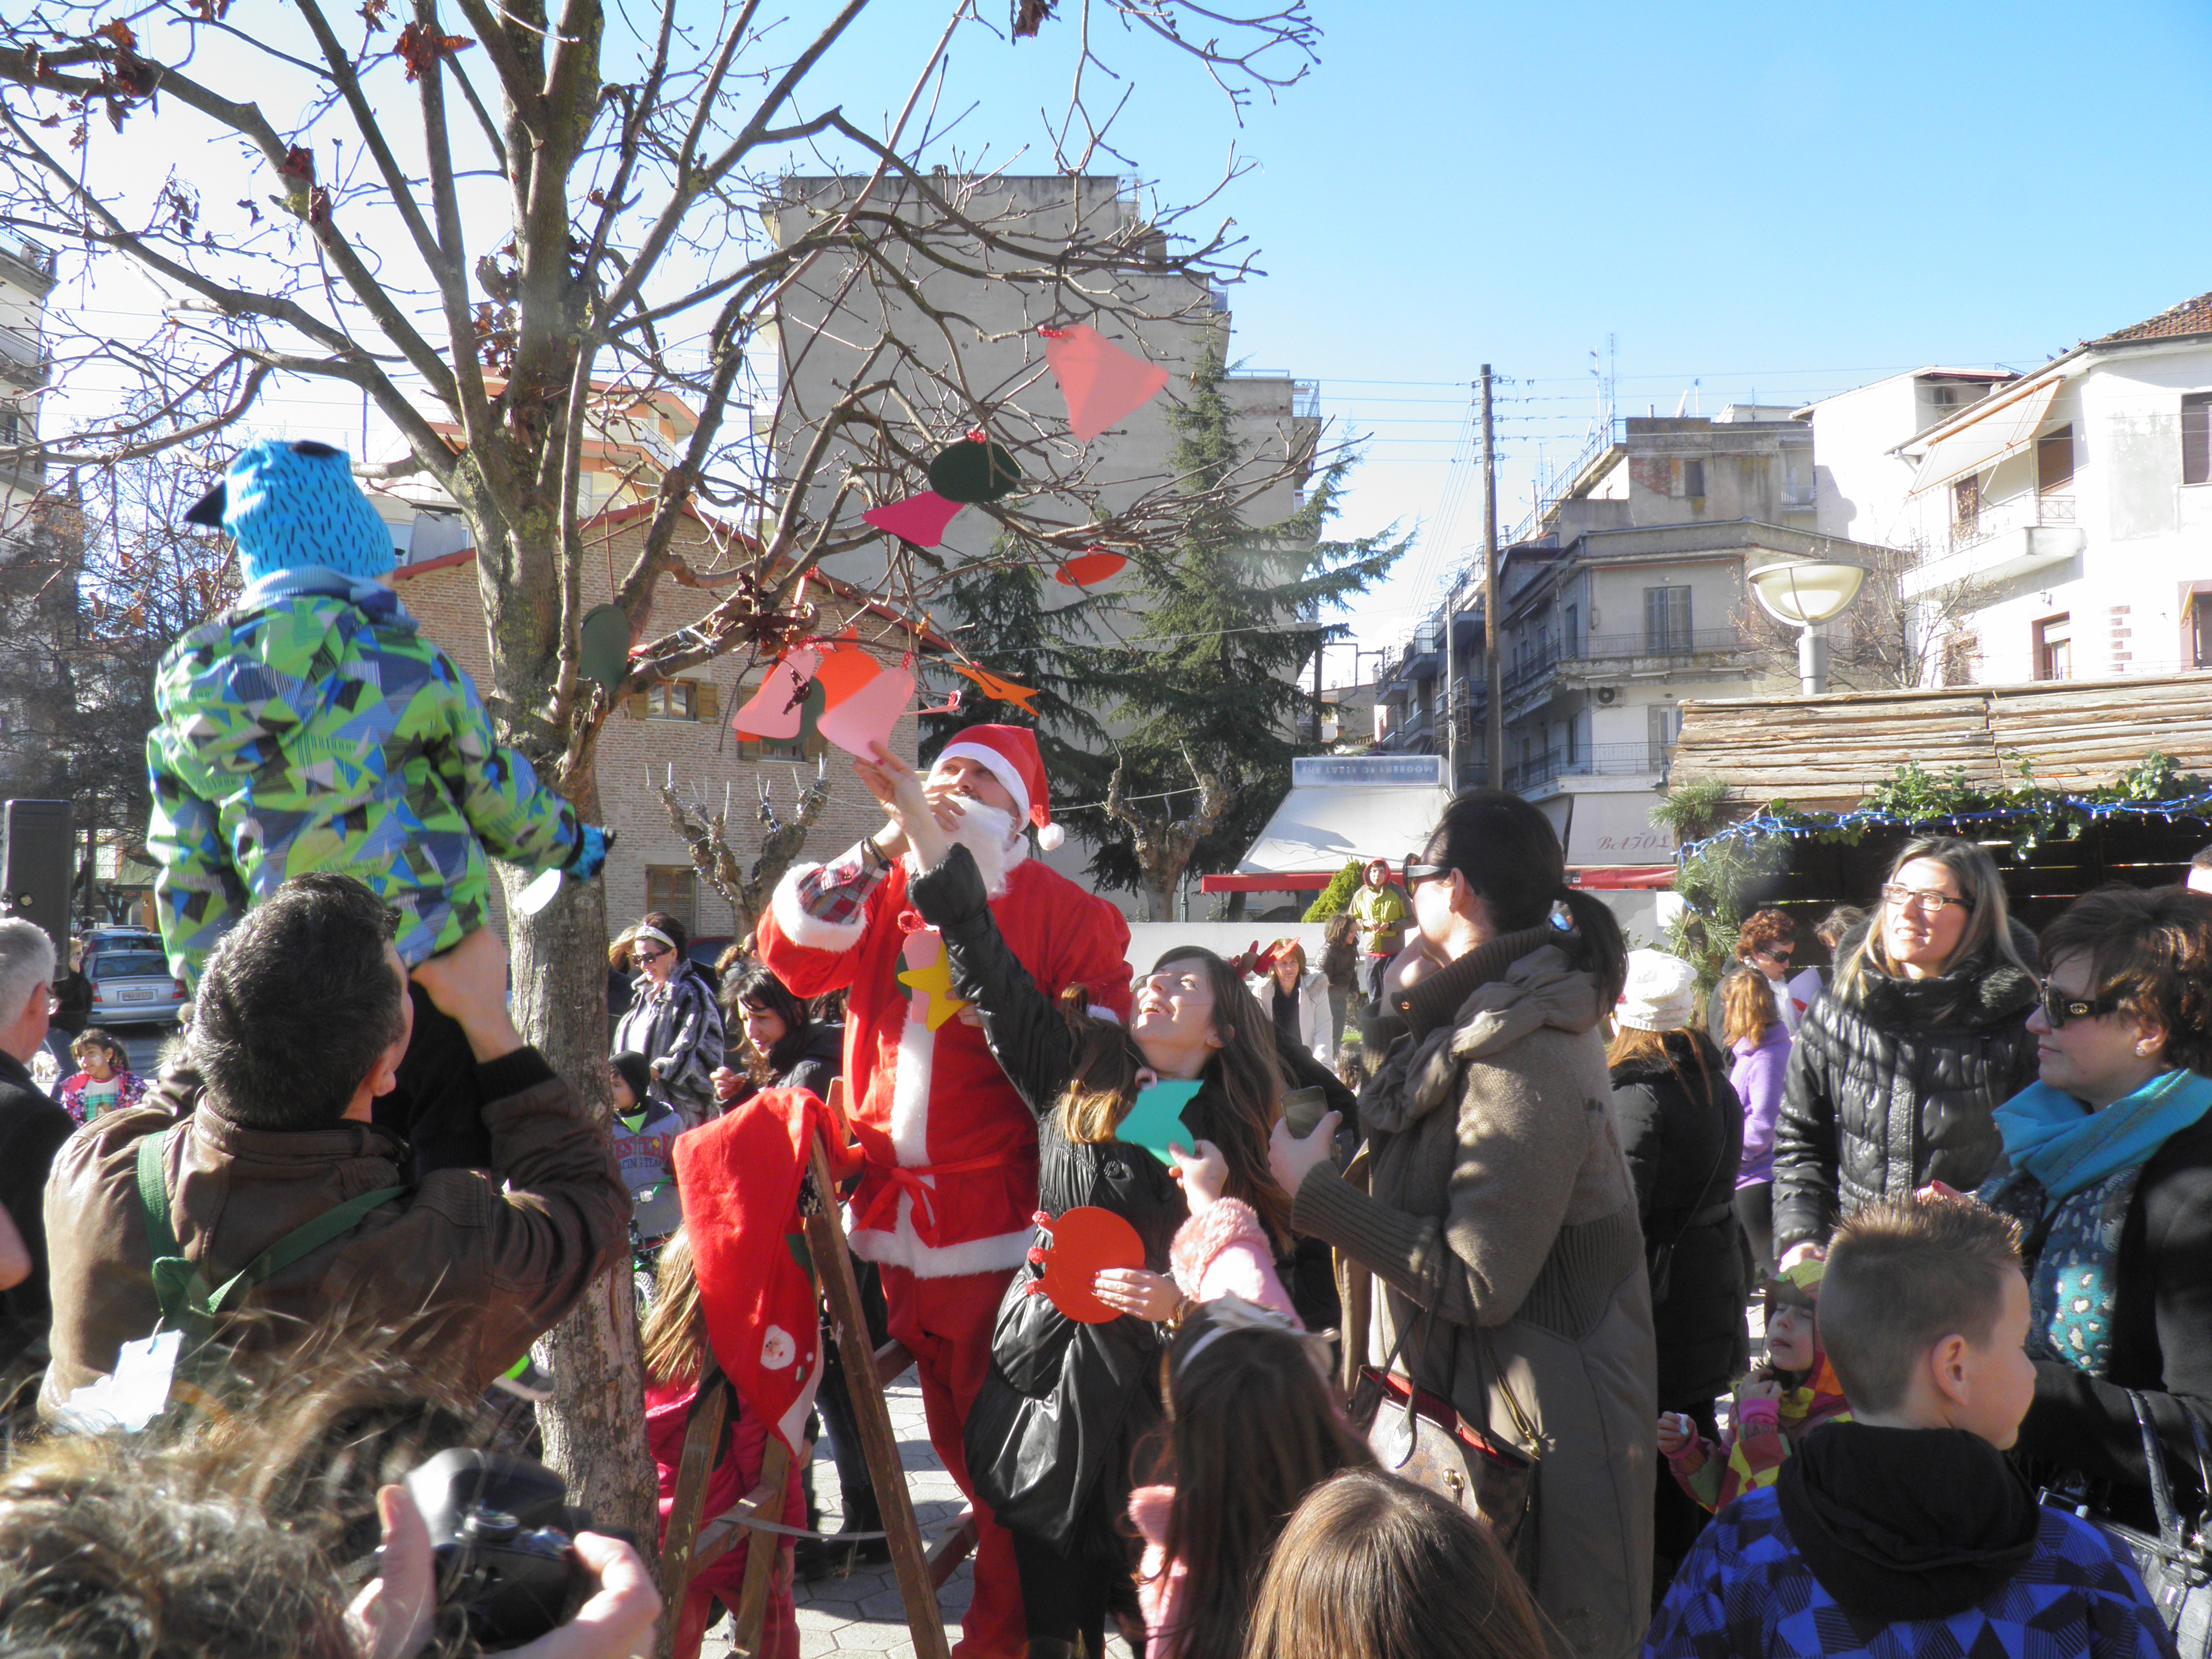 Με μεγάλη επιτυχία πραγματοποιήθηκε το Σάββατο 27 Δεκεμβρίου 2014 η εκδήλωση του Δήμου «Χριστούγεννα στην πόλη» με πρωταγωνιστές τα μικρά παιδιά (φωτογραφίες)